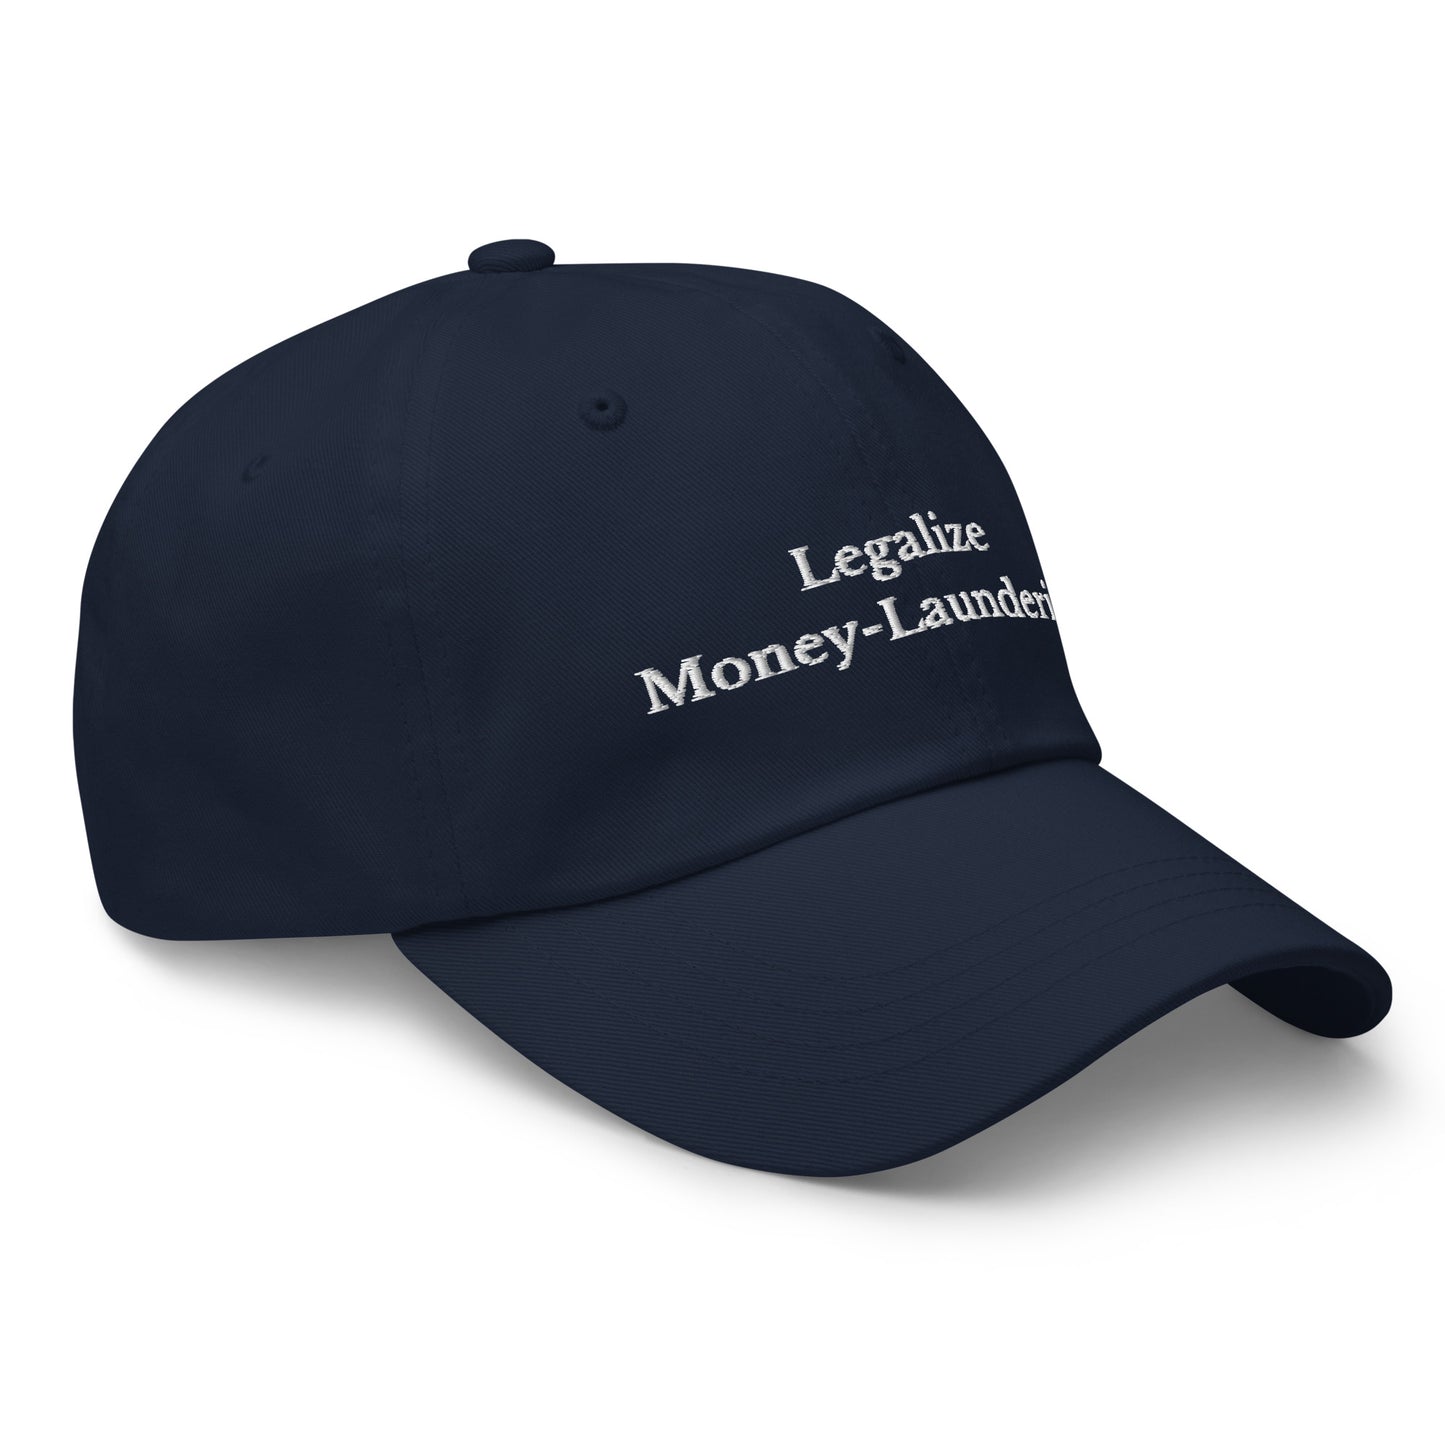 Legalize ML Cap